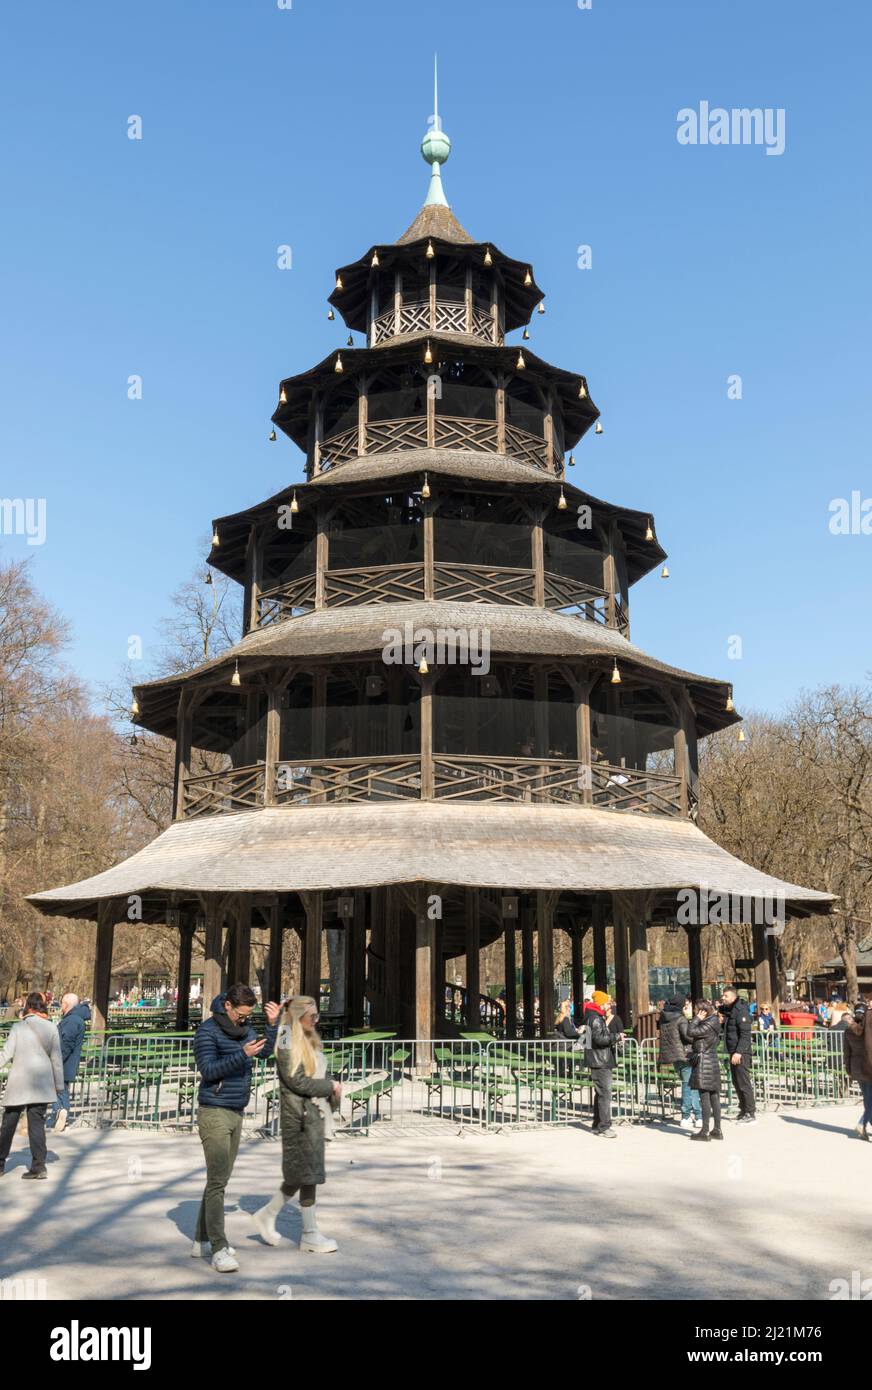 Munich, Germany – March 12, 2022: Chinese Tower Biergarten at Englischer Garten public park Stock Photo